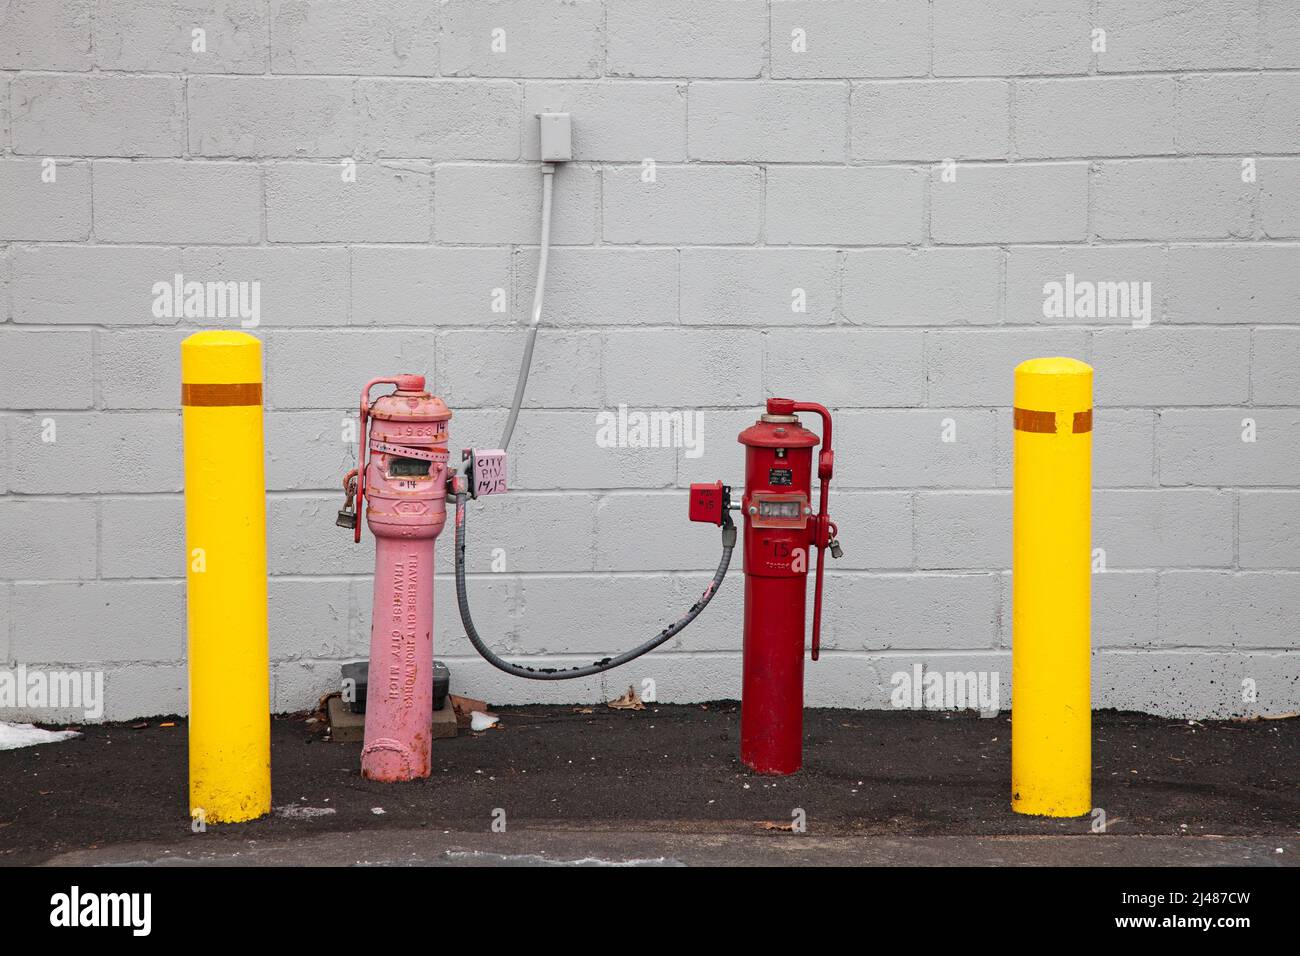 Par de medidores de color rosa y rojo al lado de un edificio que se cree que mide el uso de gas. St Paul Minnesota MN EE.UU Foto de stock